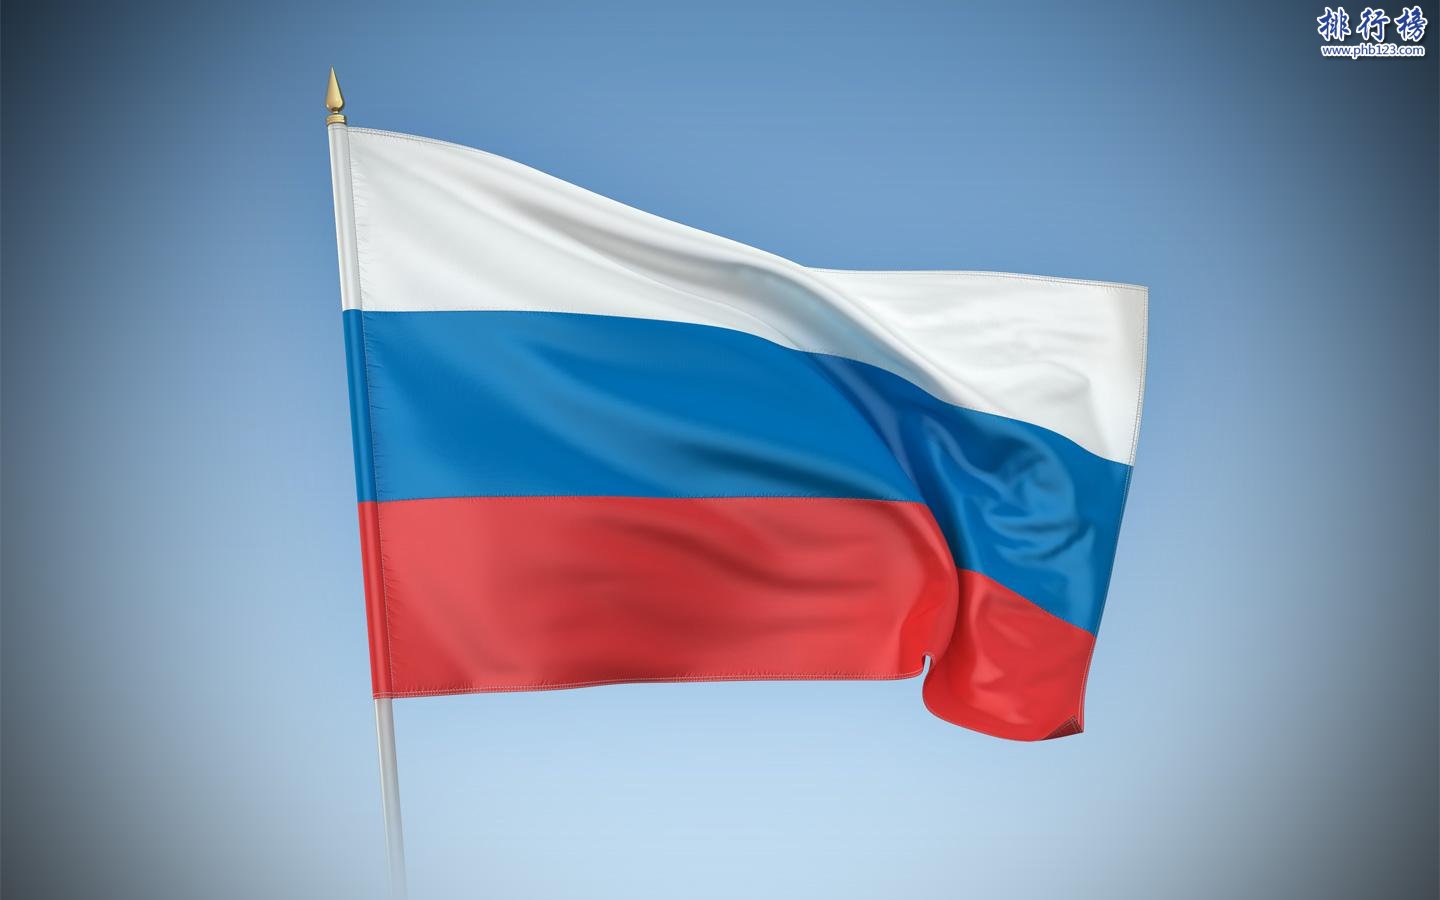 【俄罗斯国人口2018总人数】俄罗斯国人口数量2018|俄罗斯国人口世界排名 